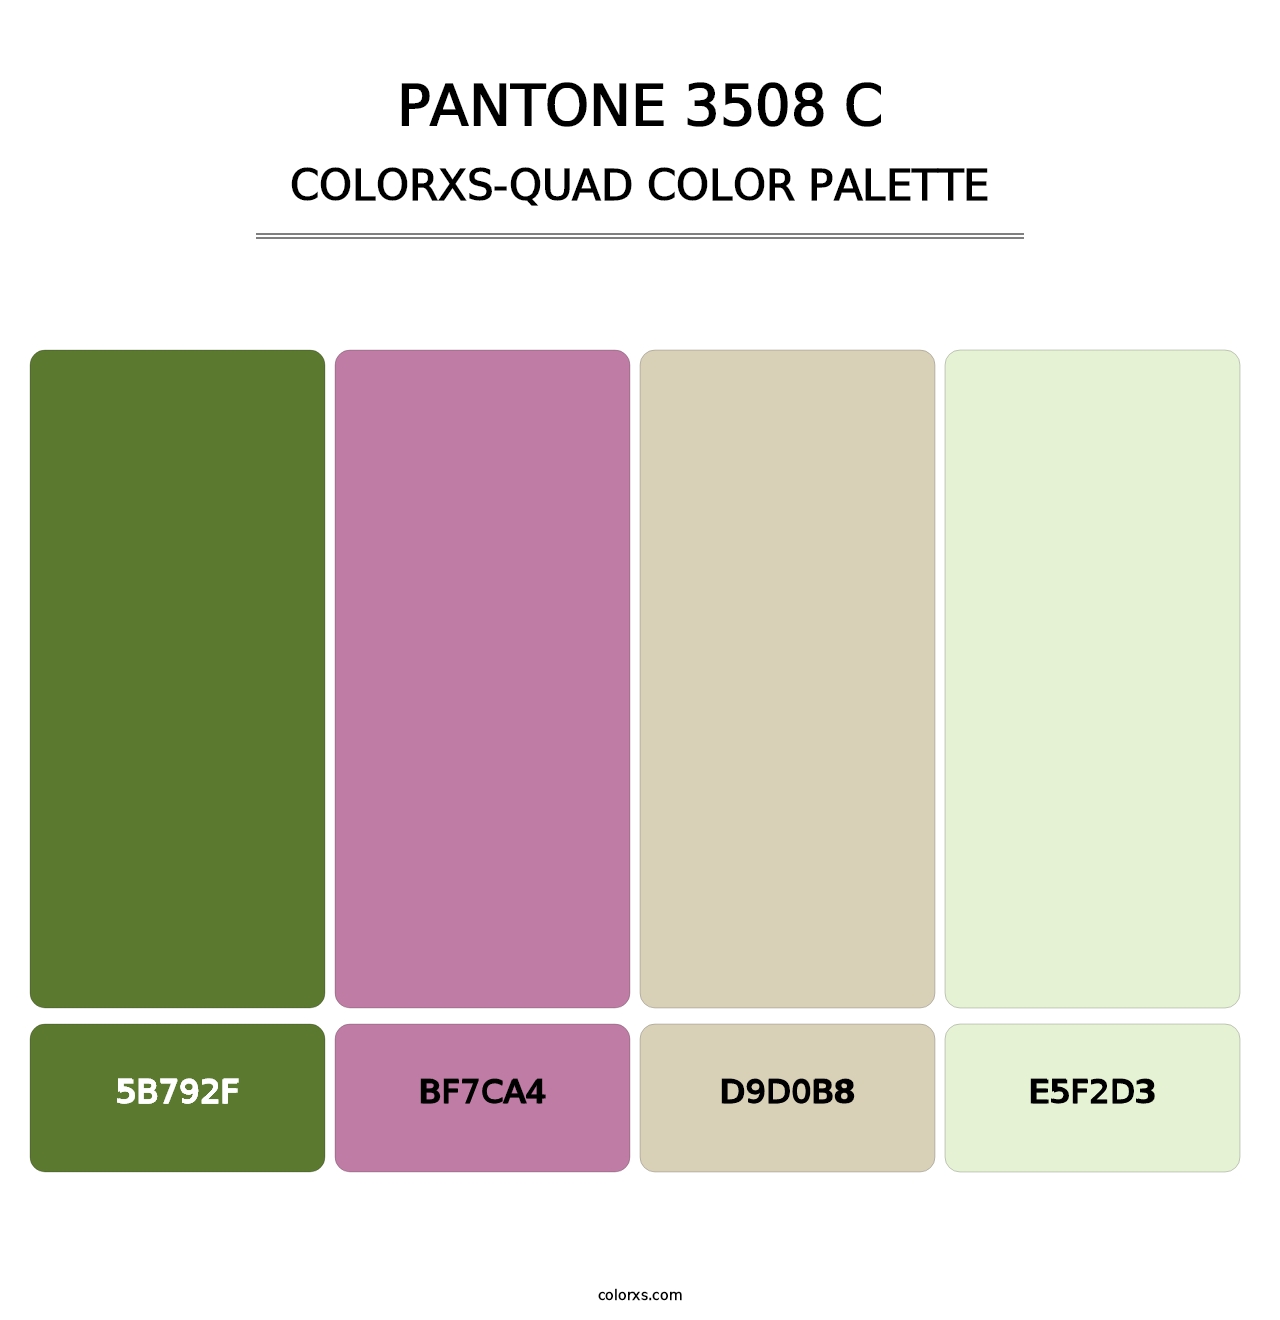 PANTONE 3508 C - Colorxs Quad Palette